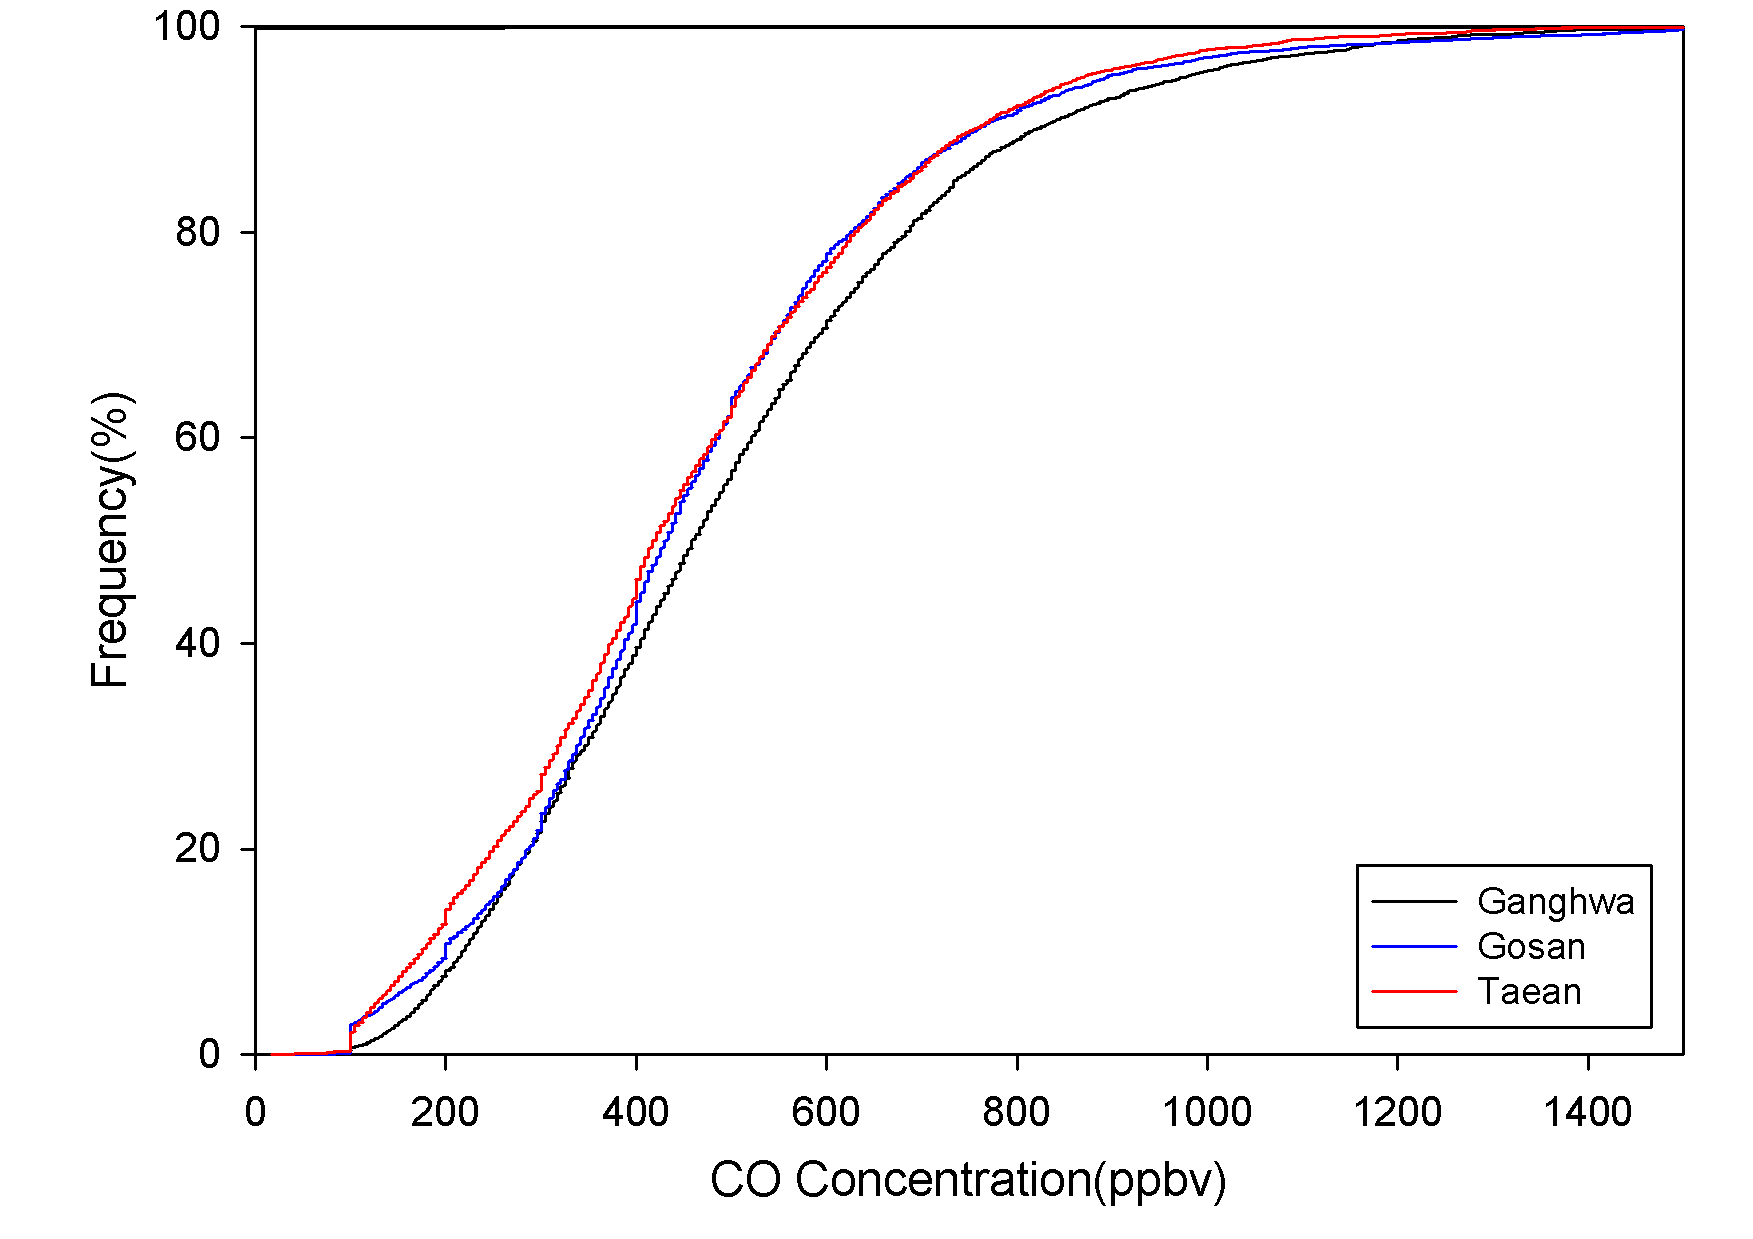 전체 측정지점의 CO 농도의 빈도 분포